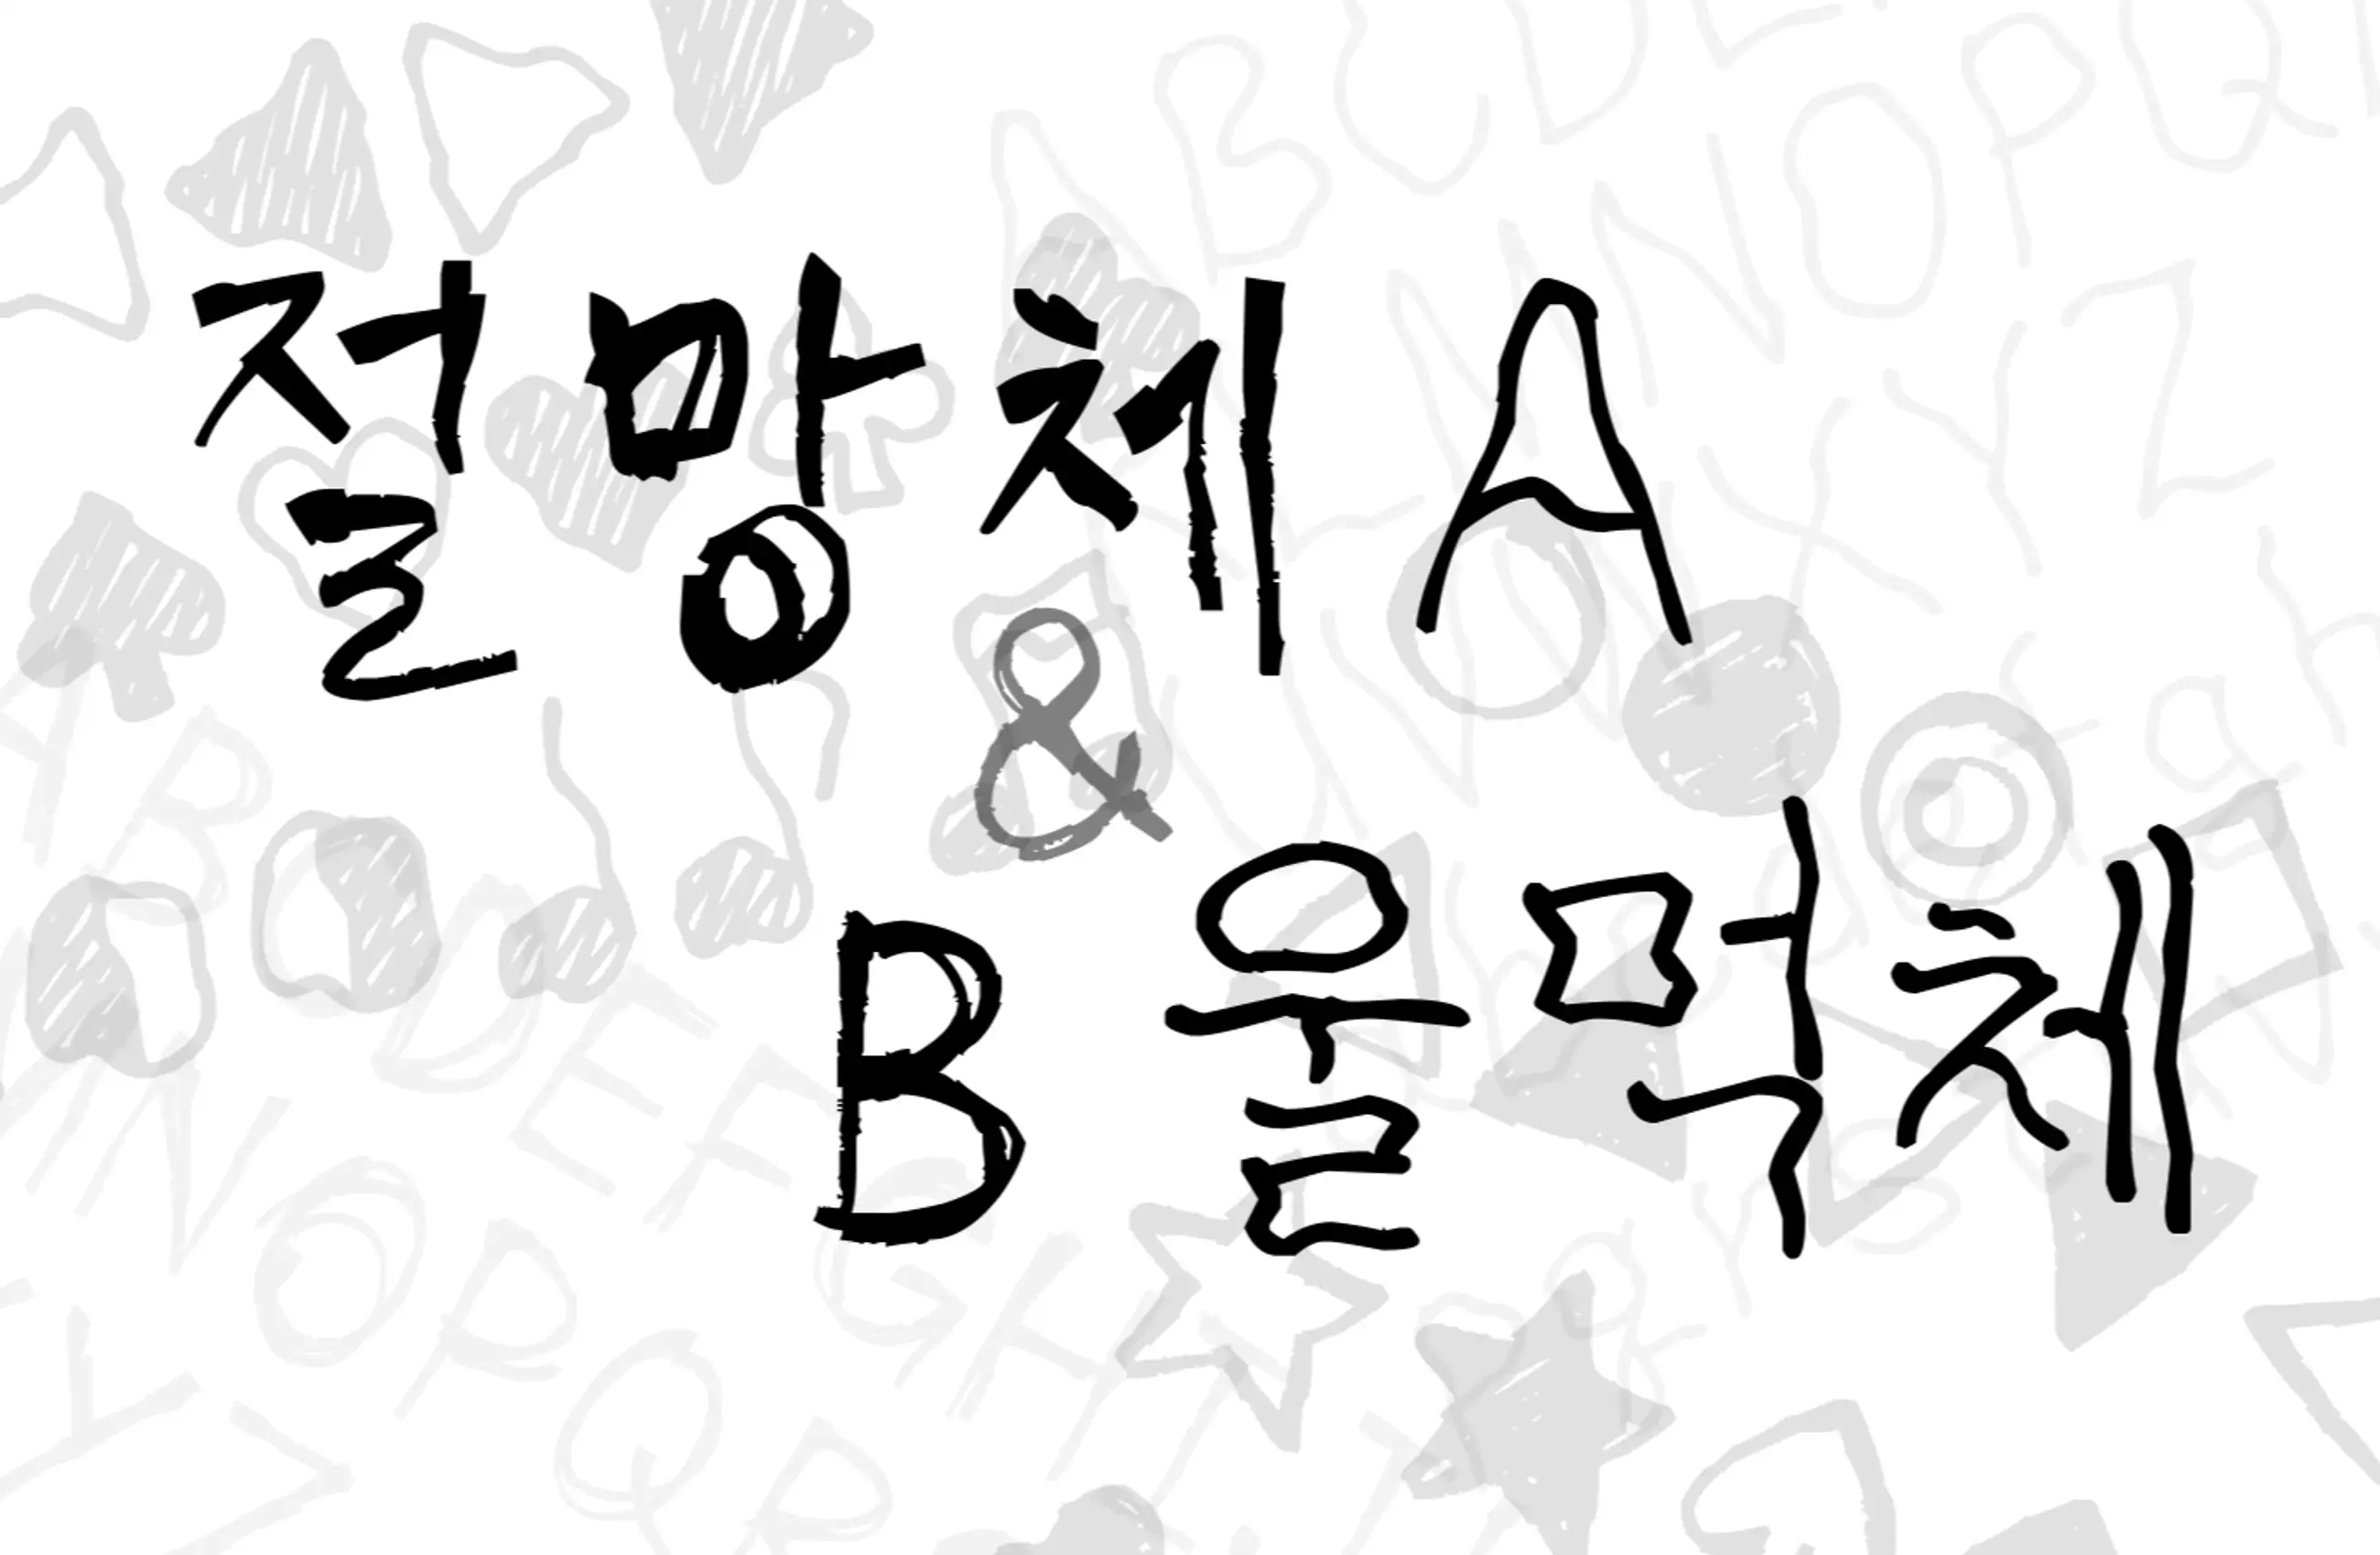 [반짝할인] 한글 폰트 - 절망체 A, B & 울먹체 A, B 세트